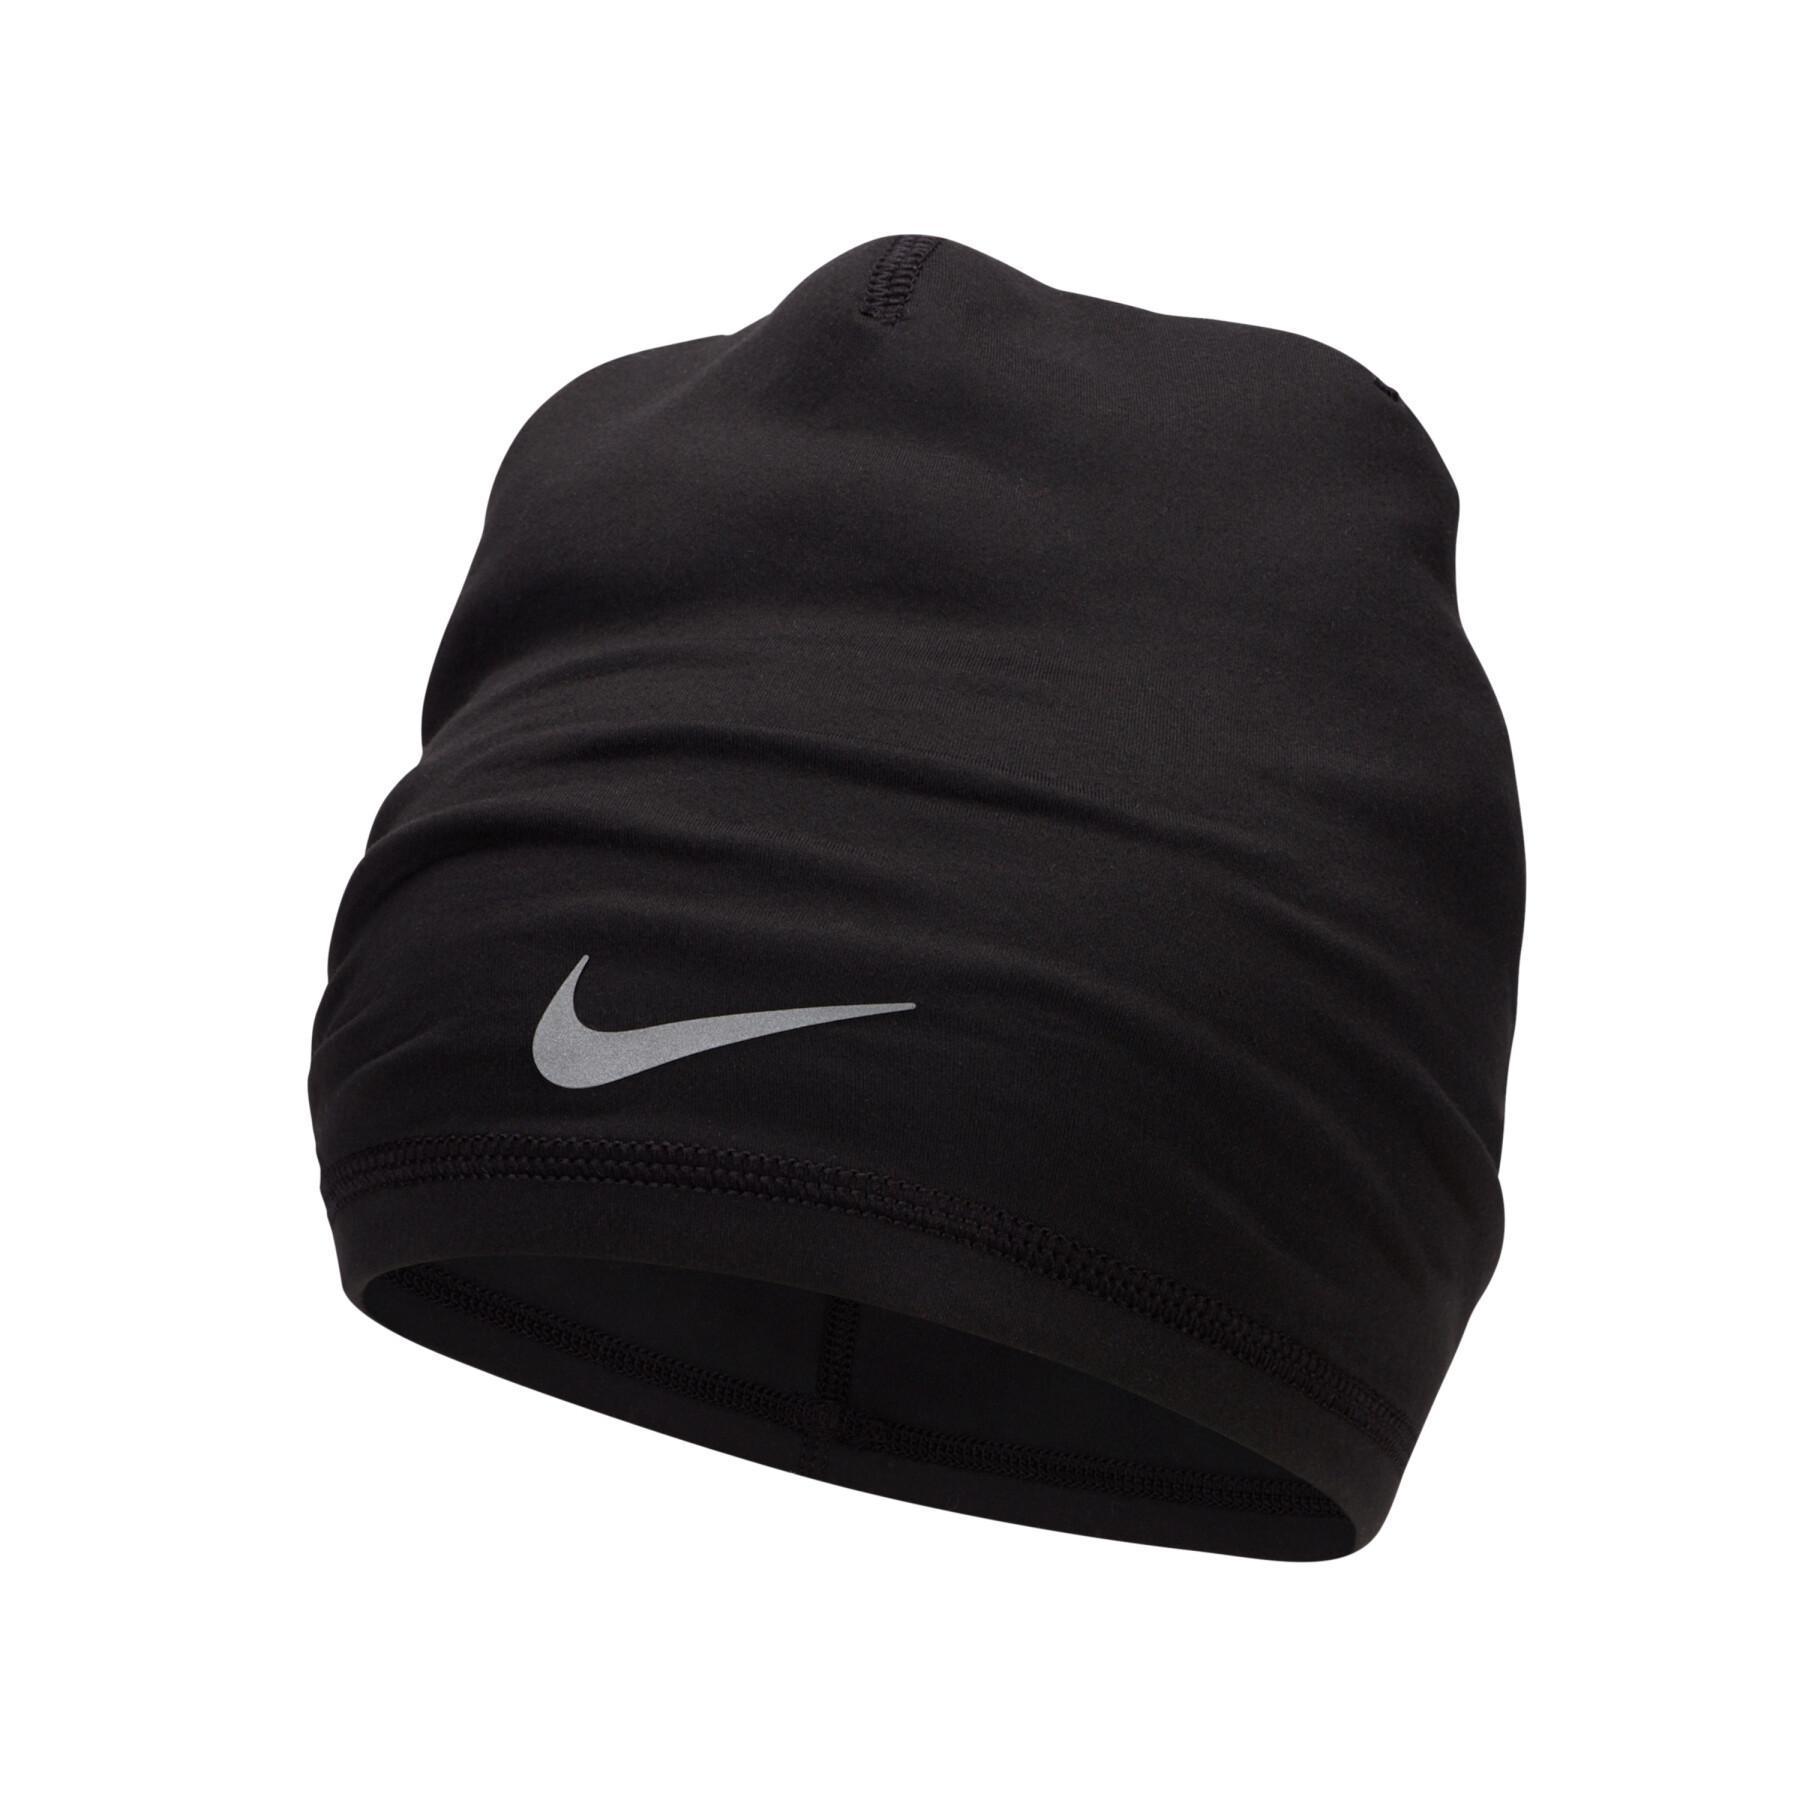 Bonnet Nike Perf Uncuffed - Bonnets - Accessoires - Vêtements Homme